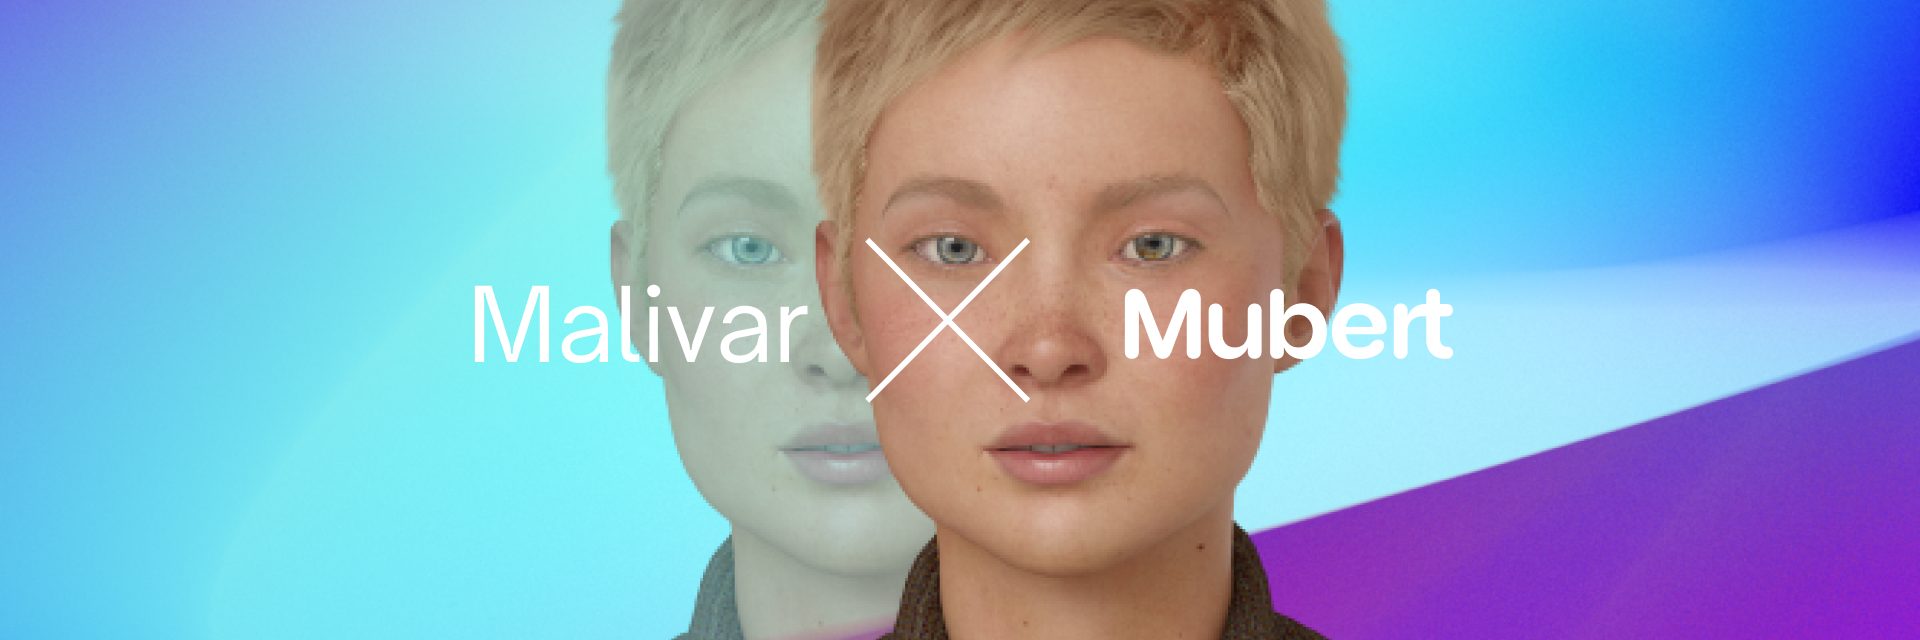 Mubert generates remixes for Malivarâ€™s digital influencer â€” Mubert Blog